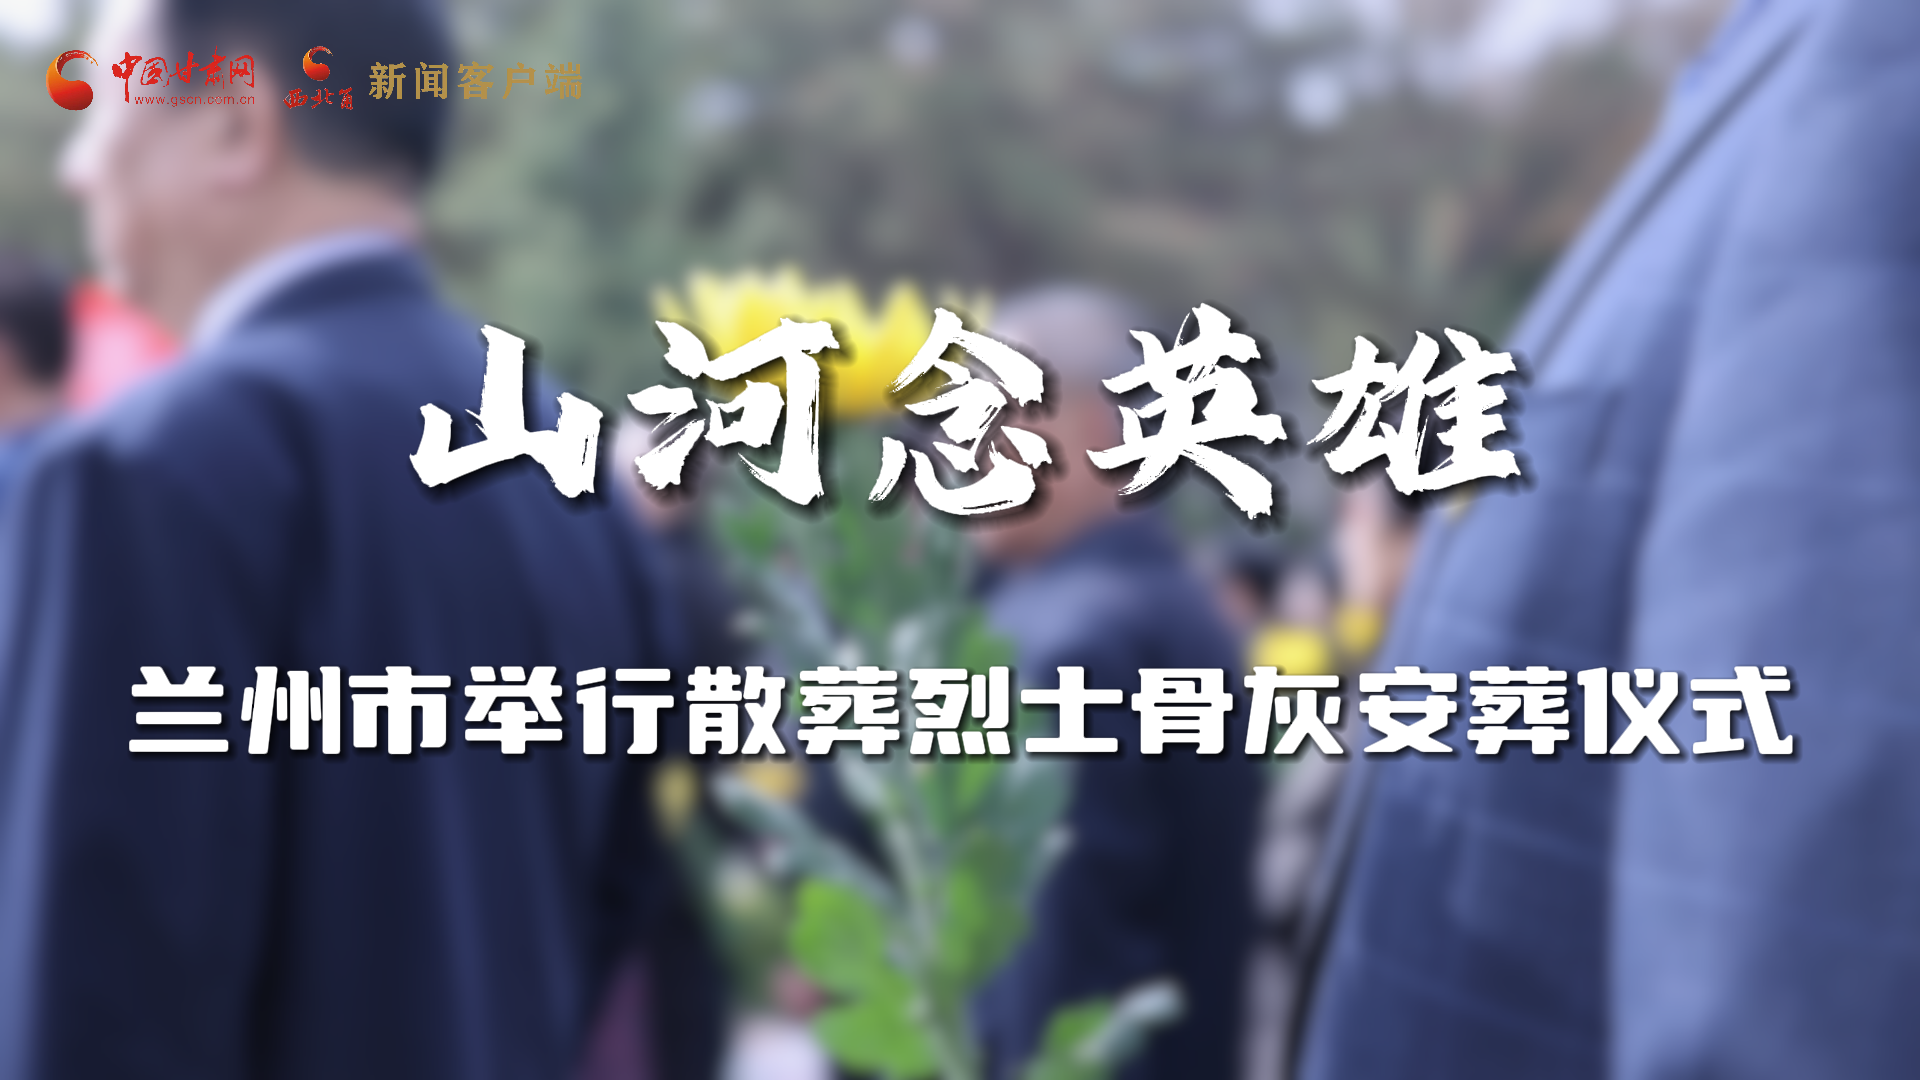 【网络中国节·清明】兰州市举行散葬烈士骨灰安葬仪式 6位烈士安葬烈士陵园